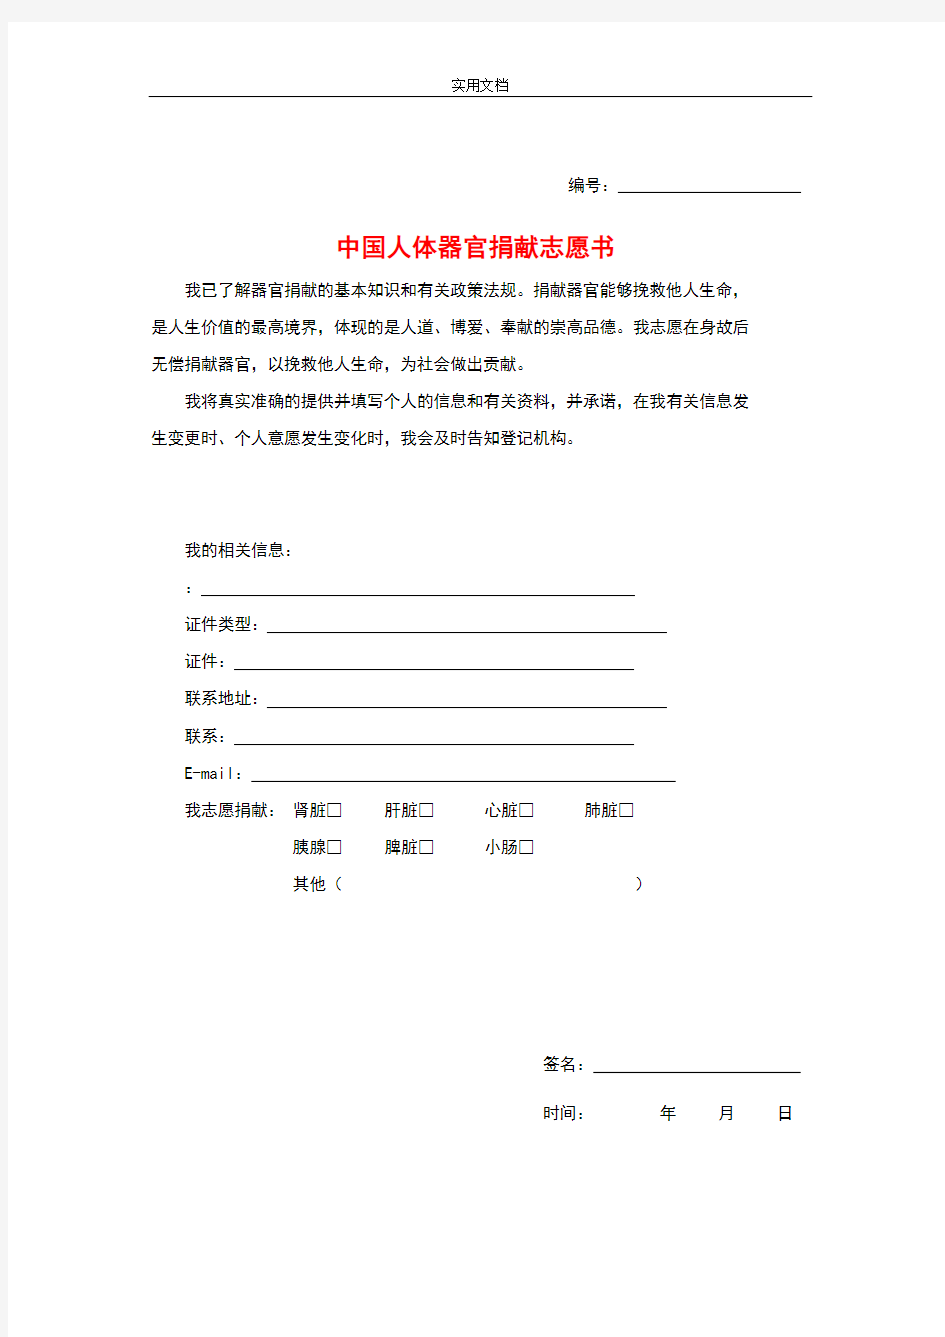 中国人体器官捐献登记表